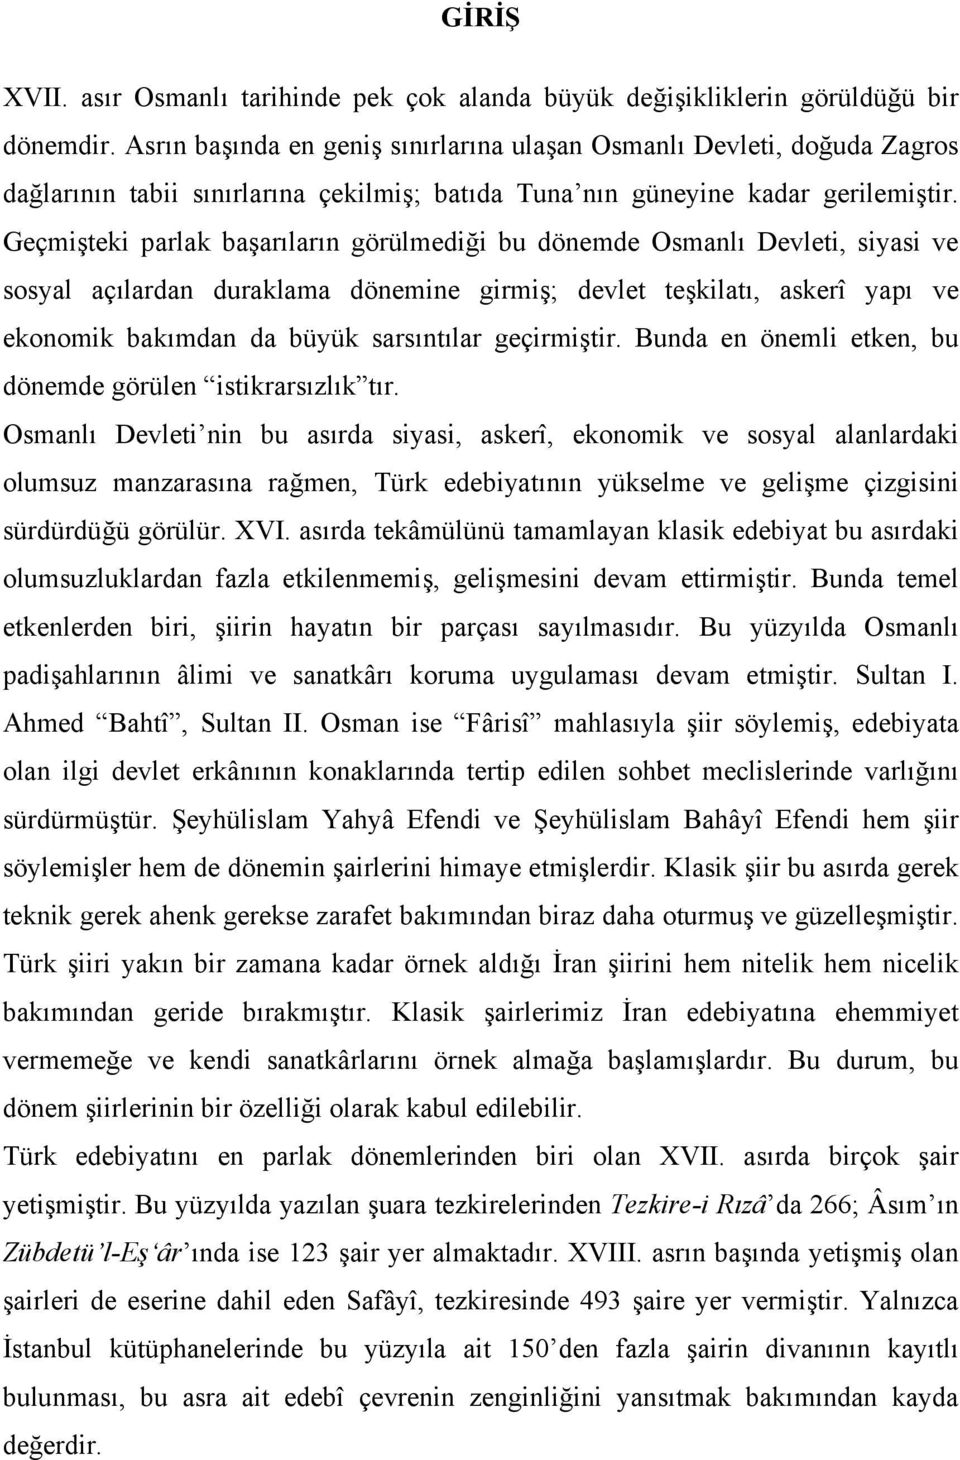 Geçmişteki parlak başarıların görülmediği bu dönemde Osmanlı Devleti, siyasi ve sosyal açılardan duraklama dönemine girmiş; devlet teşkilatı, askerî yapı ve ekonomik bakımdan da büyük sarsıntılar